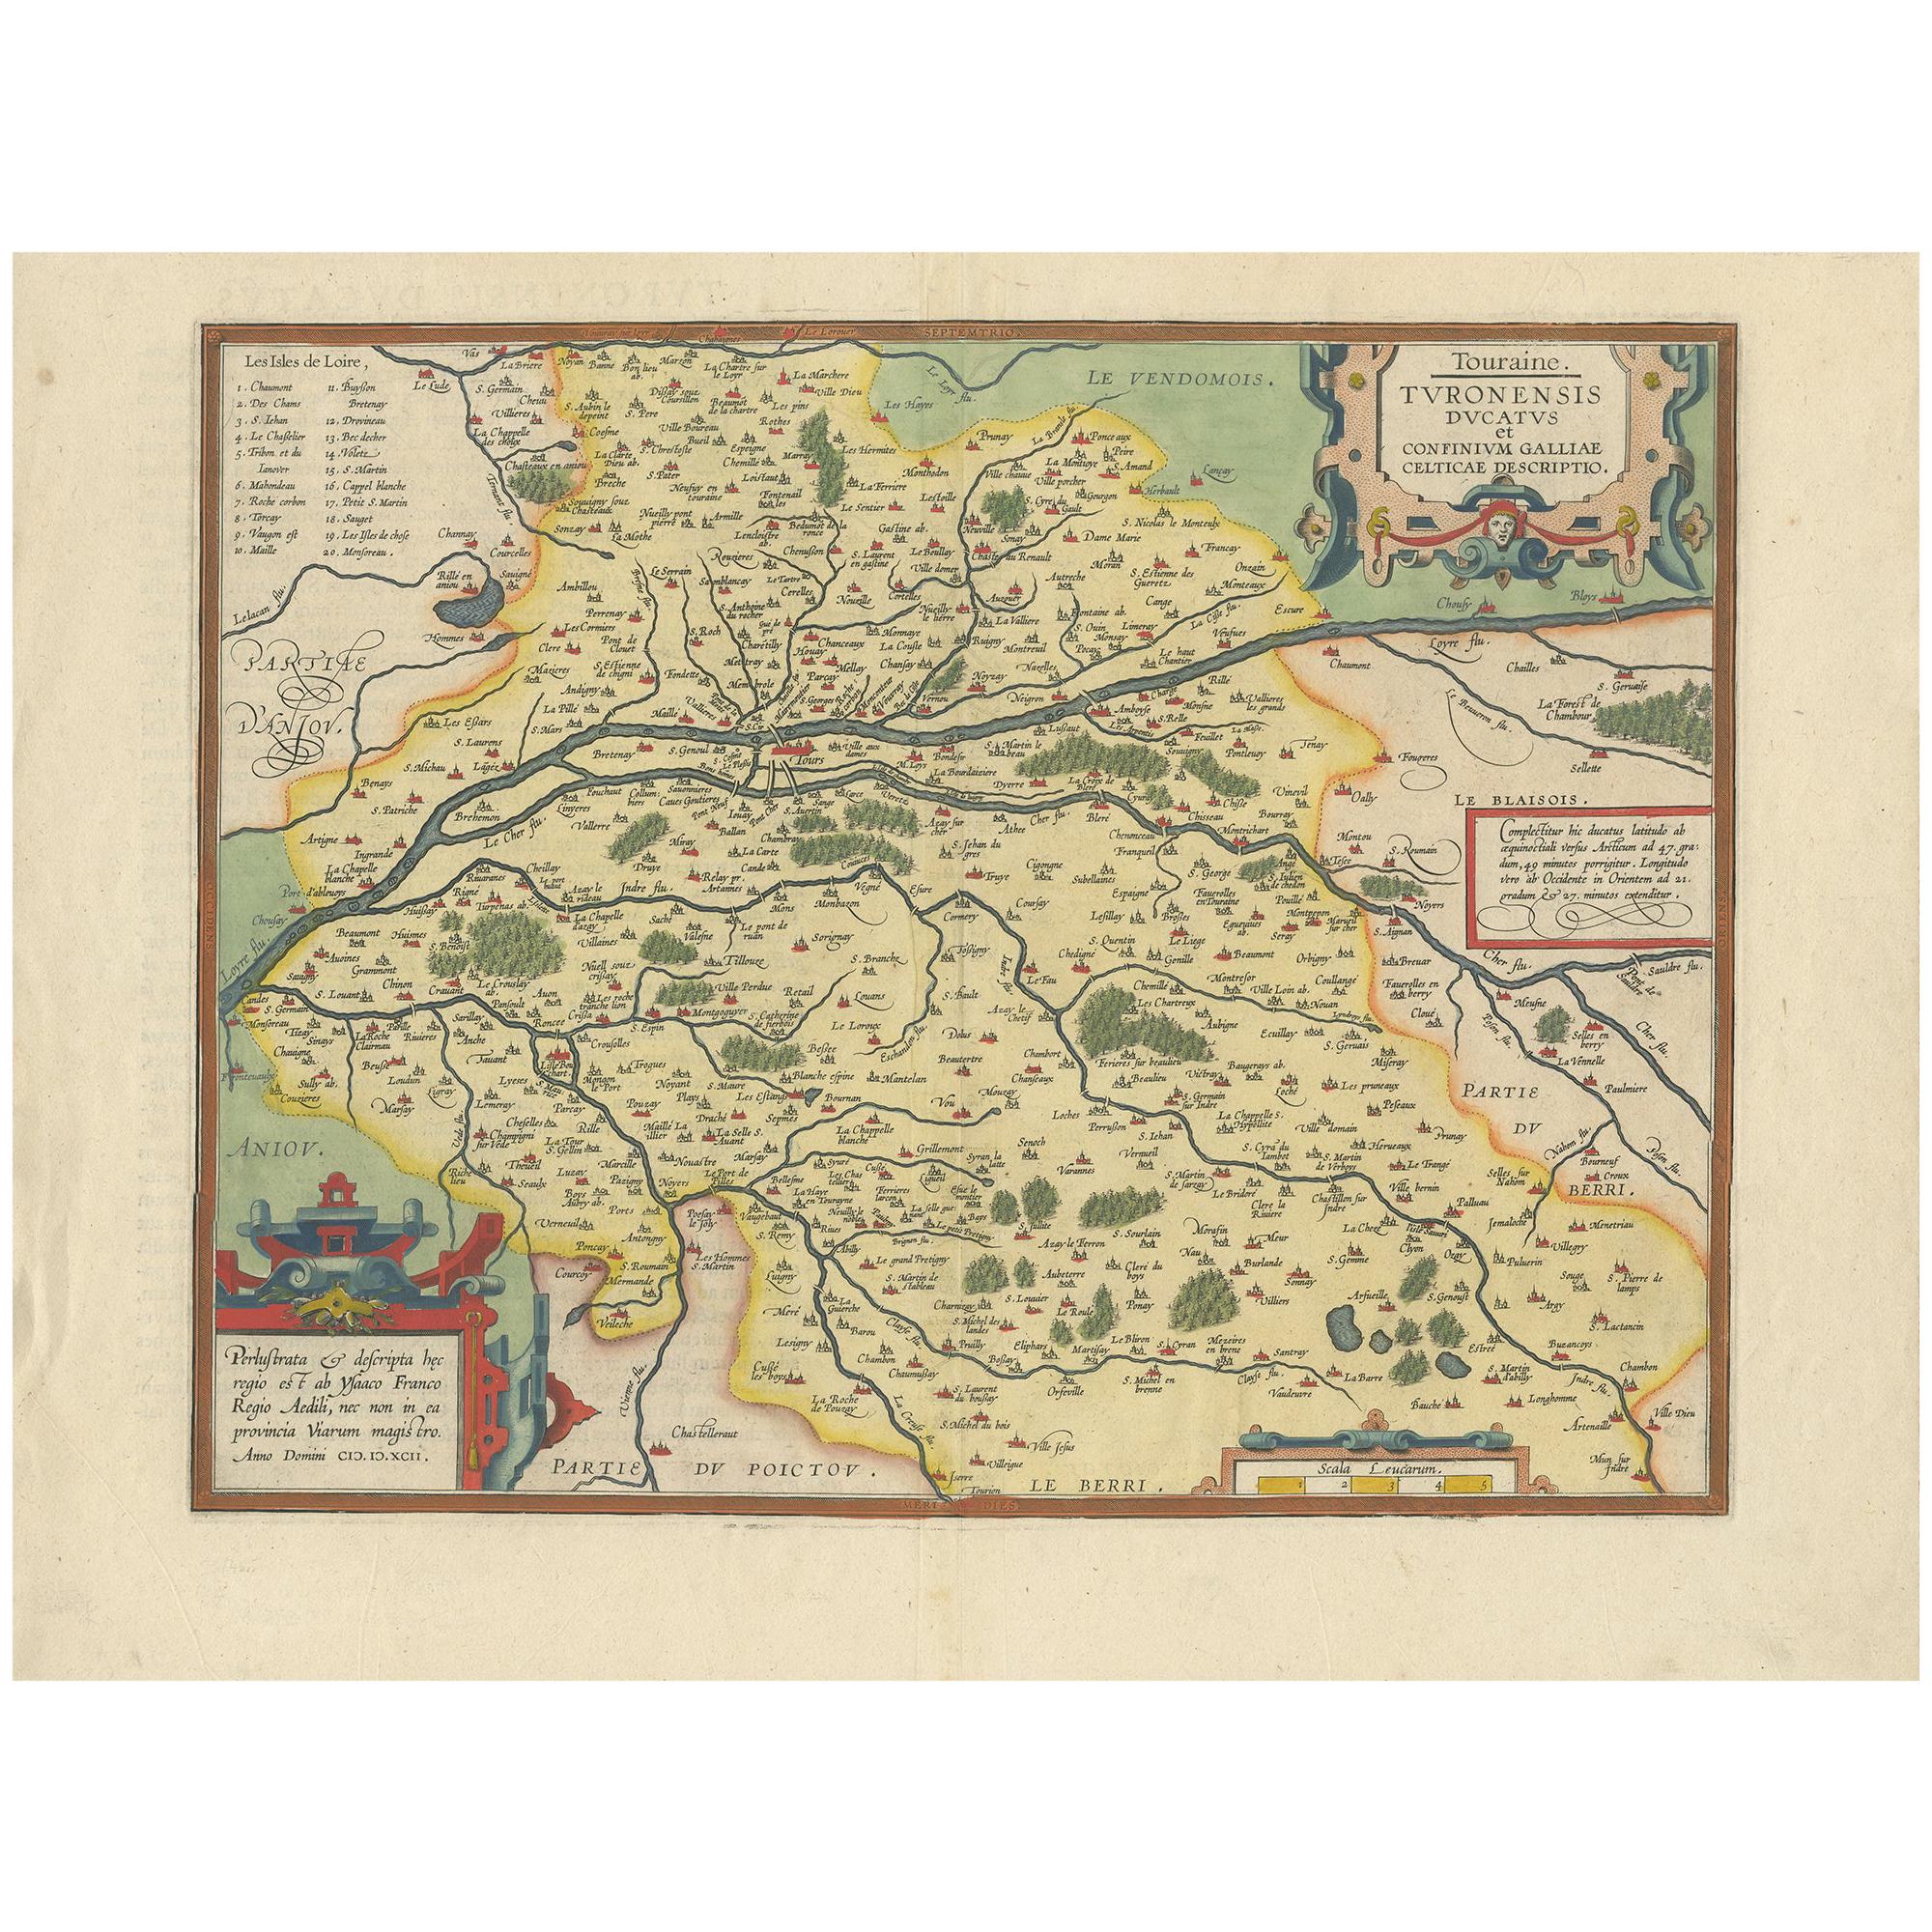 Antique Map of the Region of Touraine by Ortelius 'circa 1600'